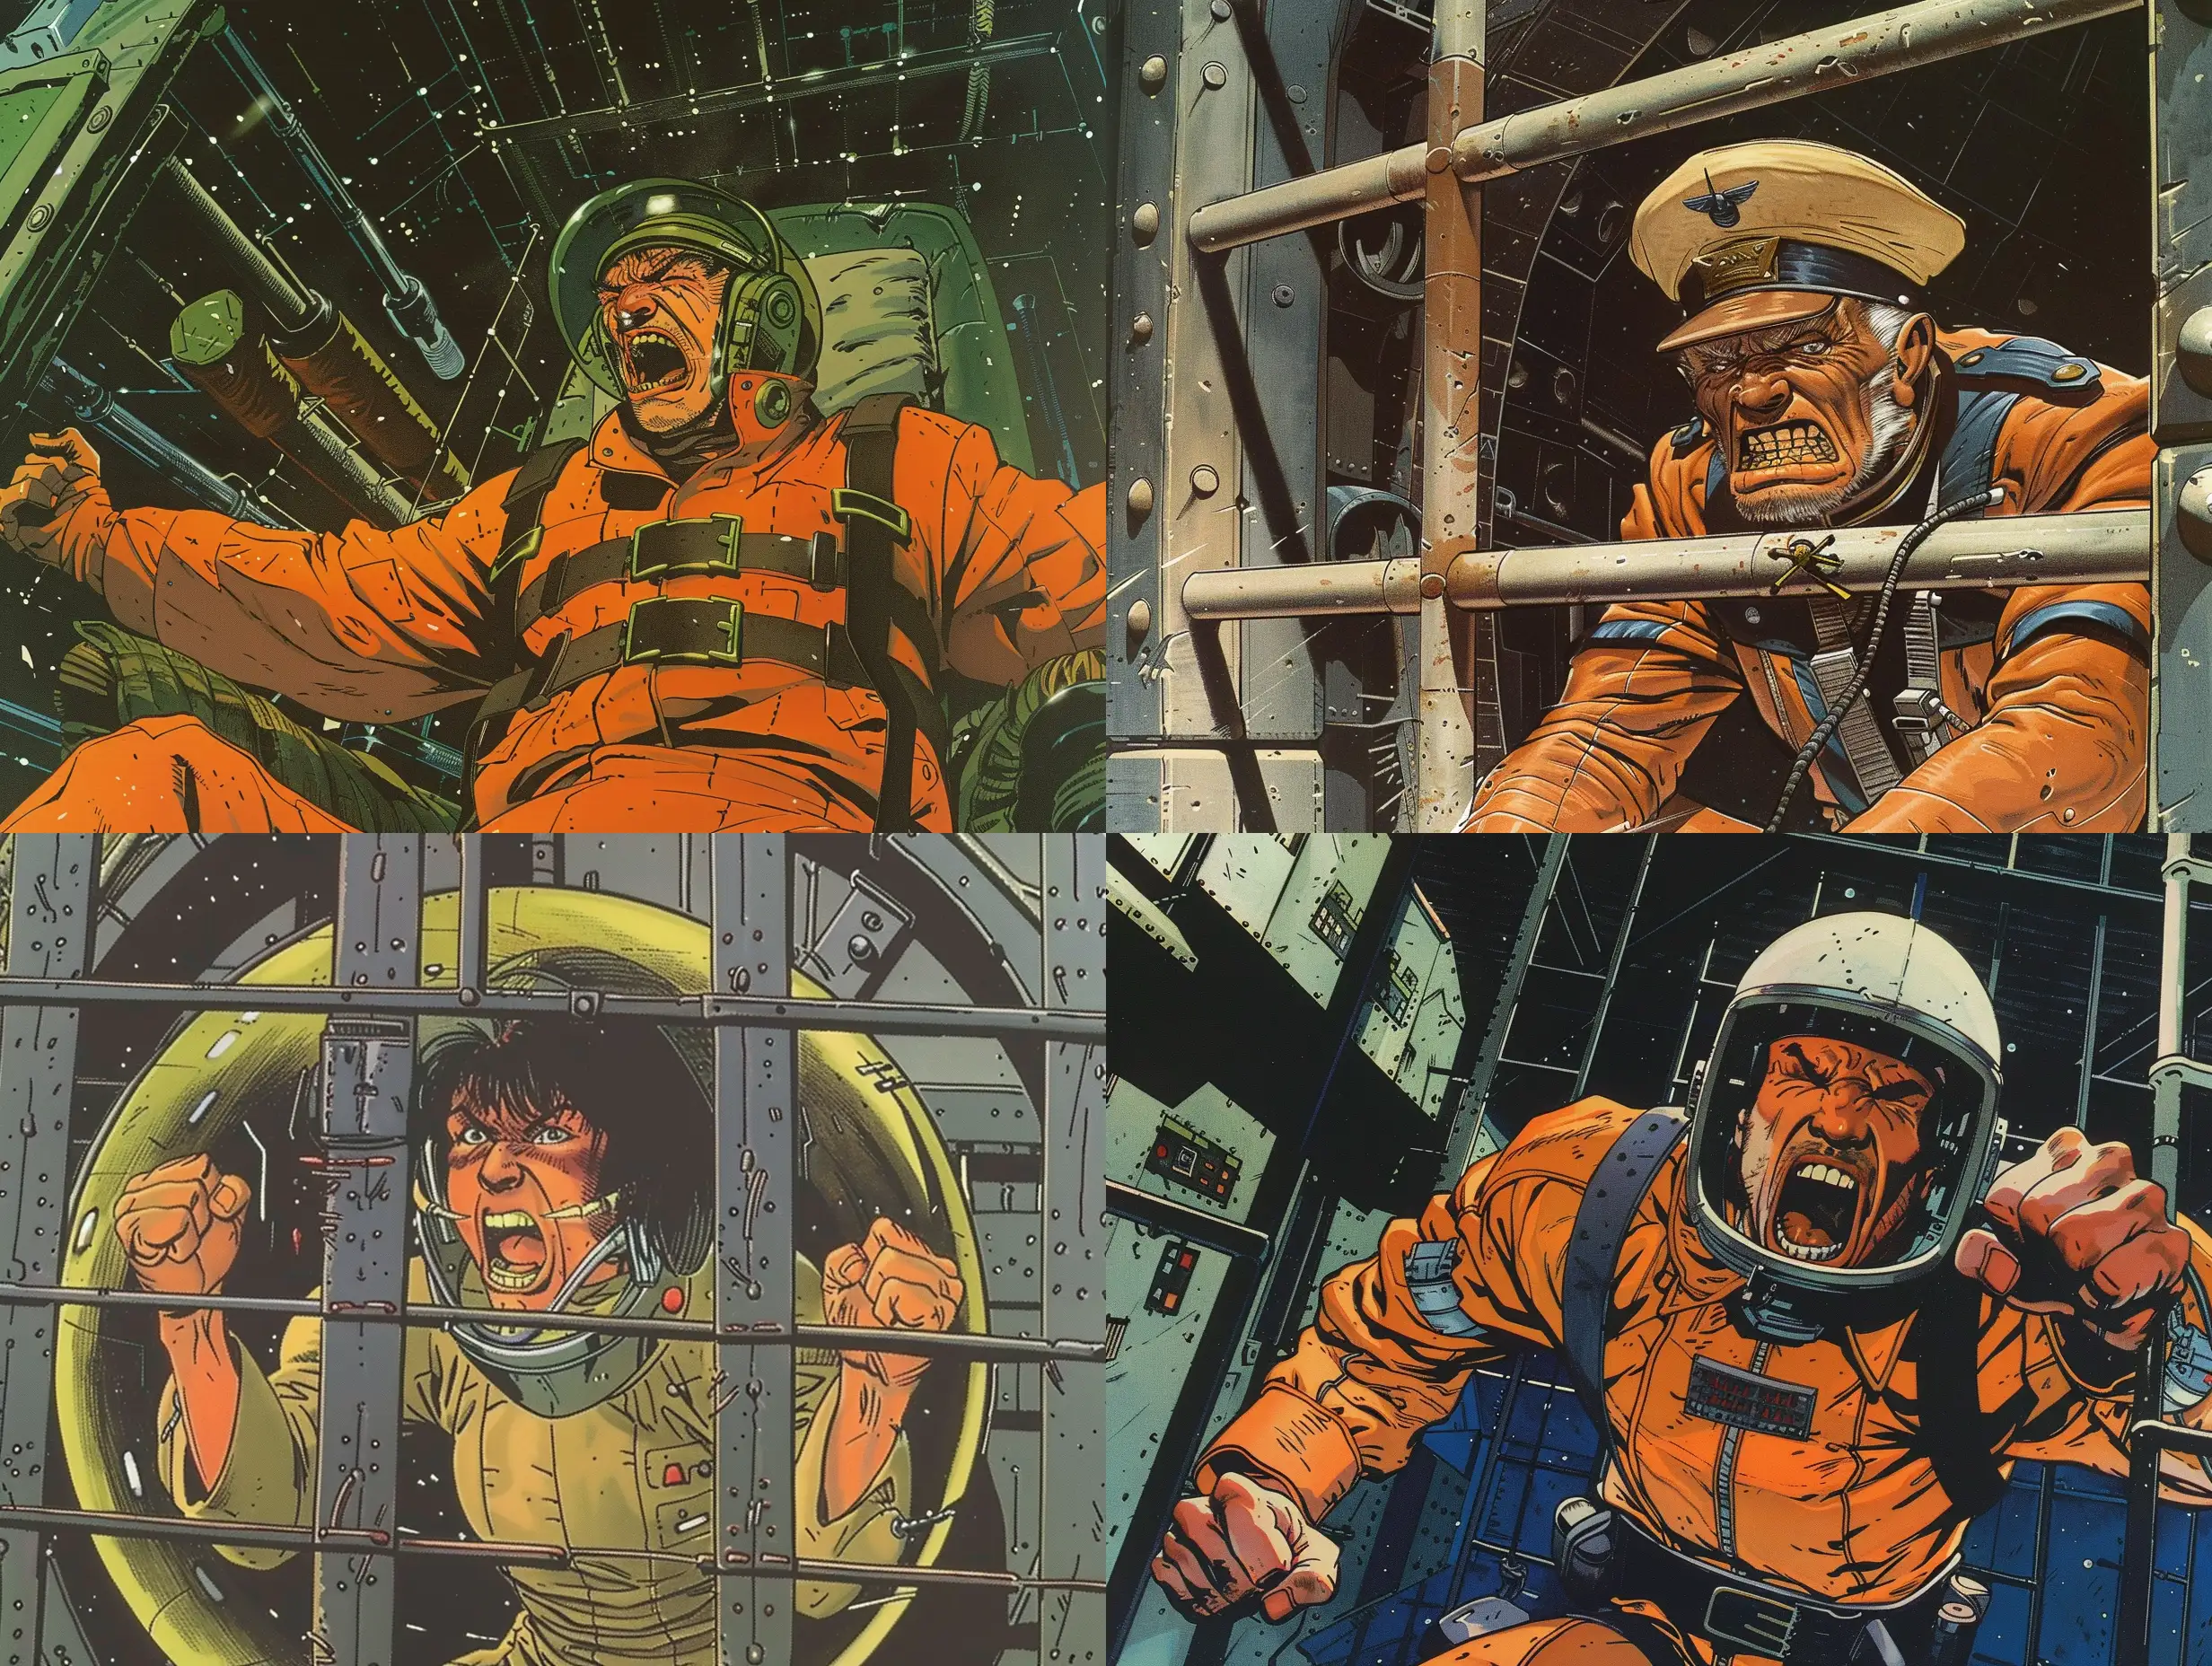 /imagine un capitaine de vaisseau en prison, en colère, style BD francophone, selon artiste Moebius